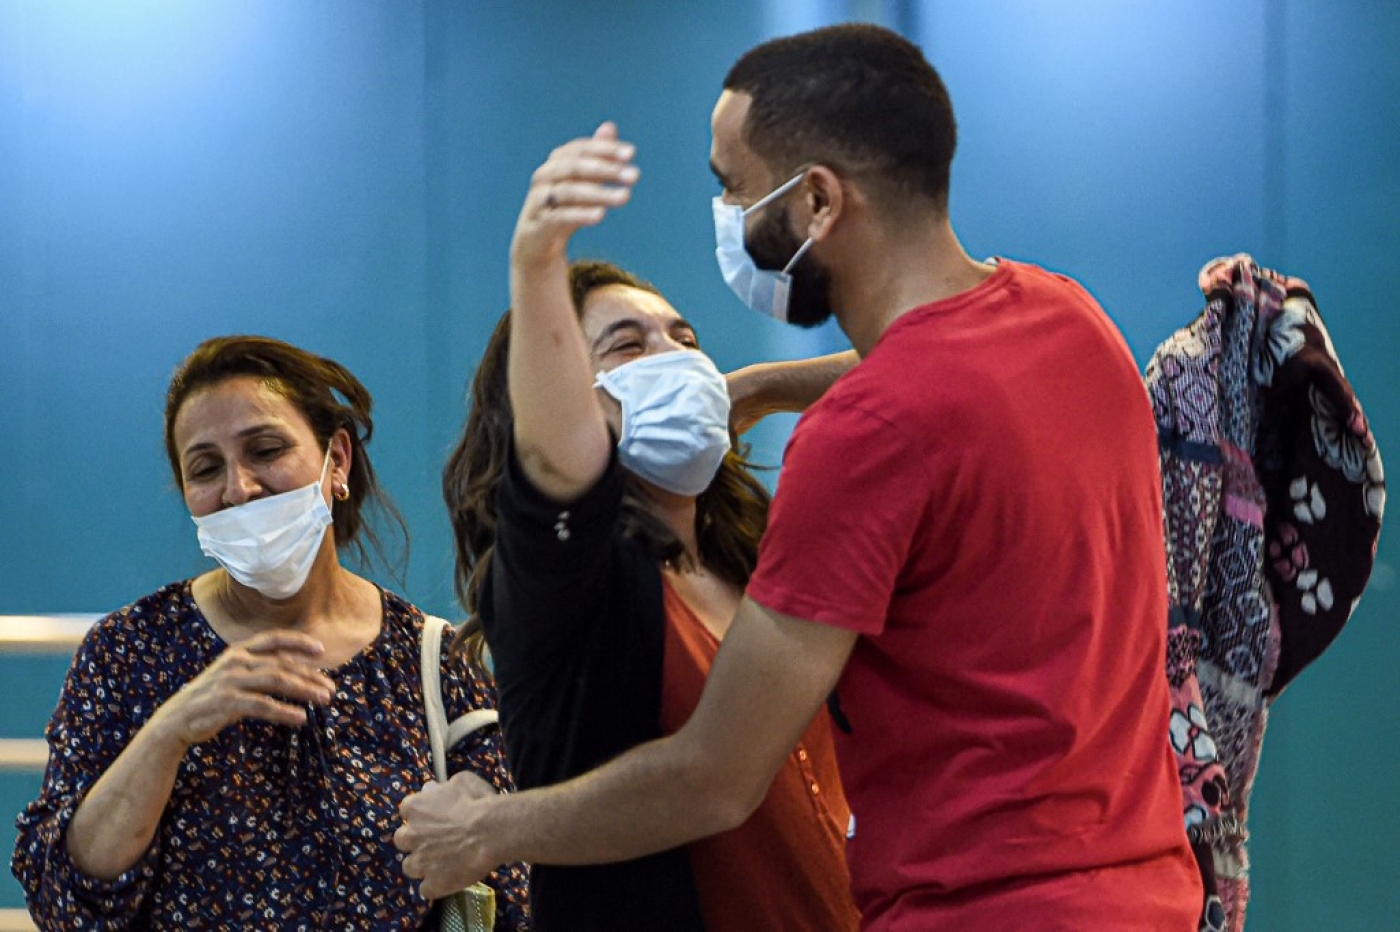 Retrouvailles entre membres d’une famille à l’aéroport Tunis-Carthage, le 27 juin 2020 (AFP)